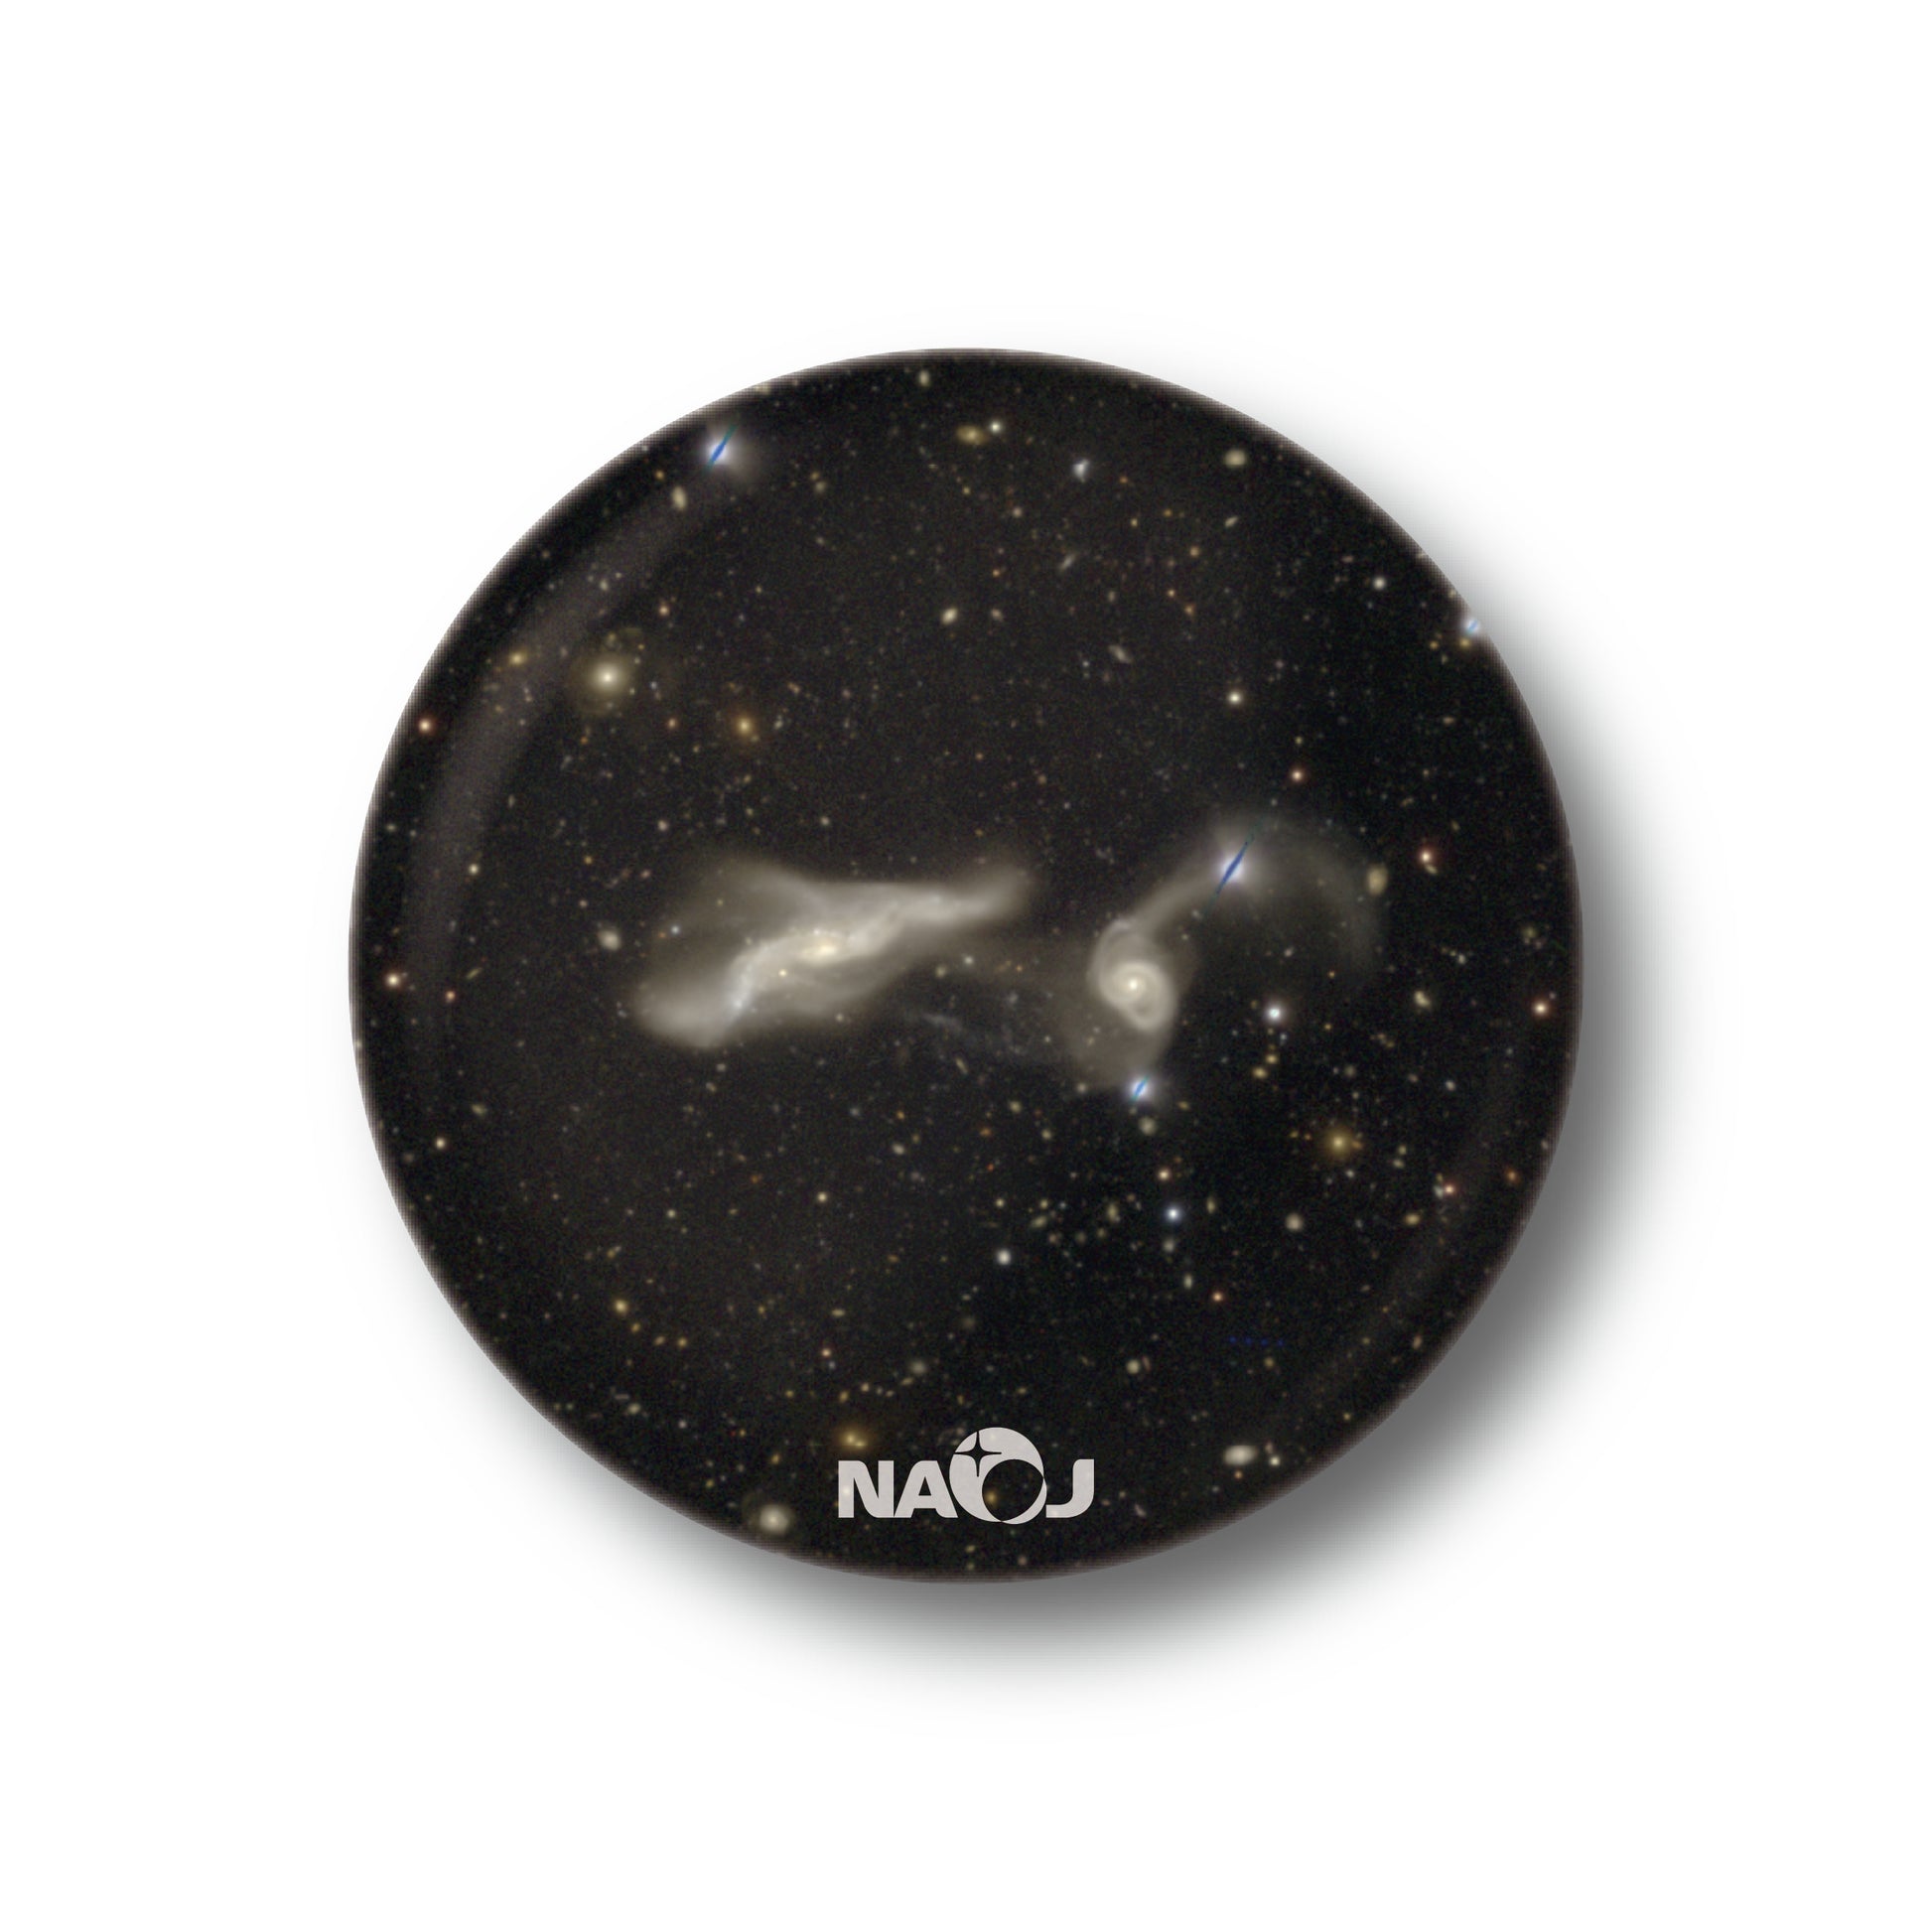 国立天文台  すばる望遠鏡HSCで見る宇宙  マグネット [小] 衝突銀河 UGC12589&2MASXJ23250382+0001068 01